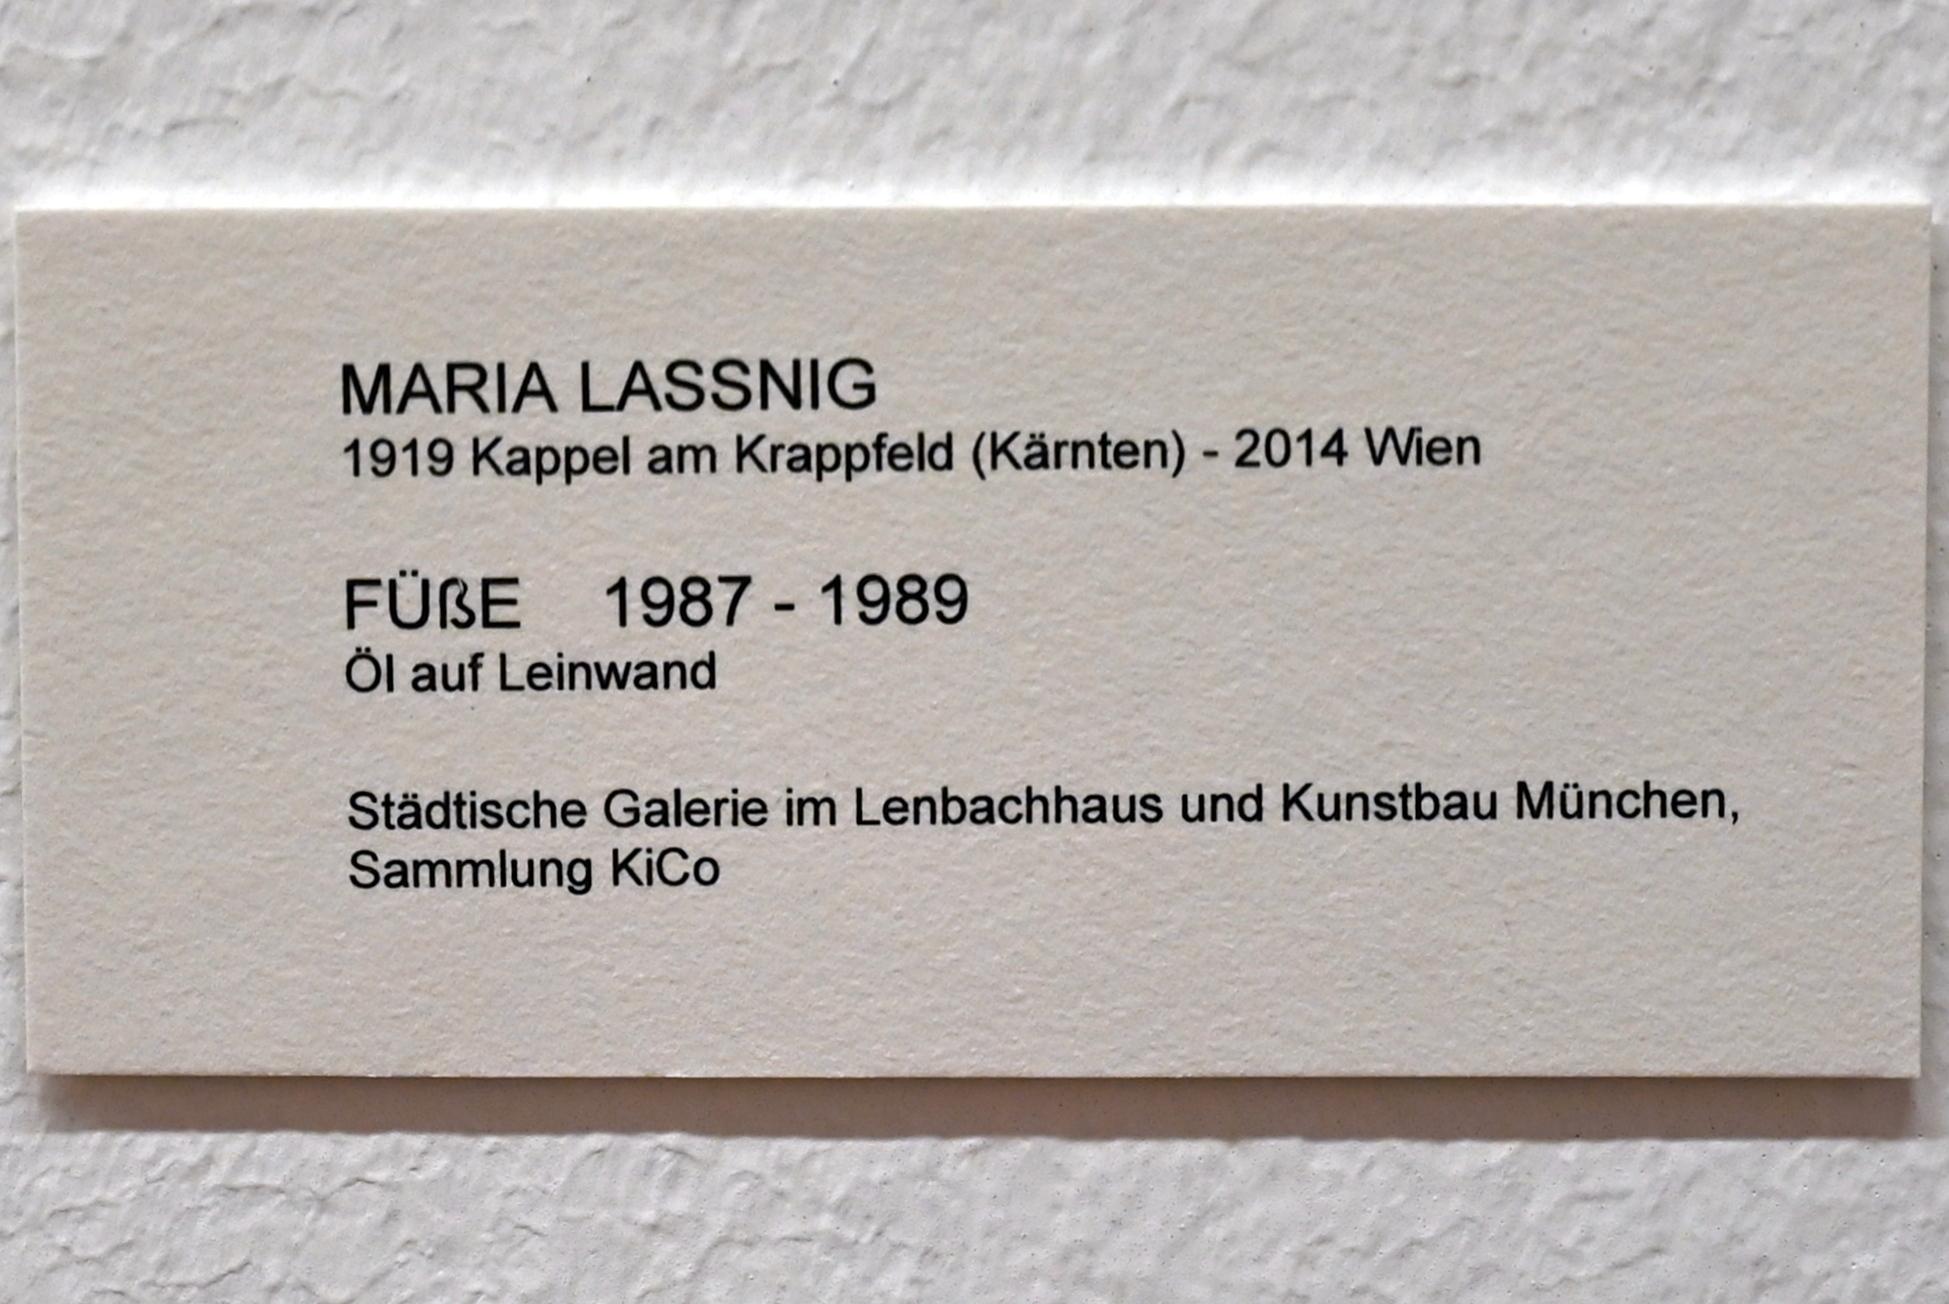 Maria Lassnig (1945–2011), Füße, Bonn, Kunstmuseum, Ausstellung "Maria Lassnig - Wach bleiben" vom 10.02. - 08.05.2022, Saal 5, 1987–1989, Bild 2/2